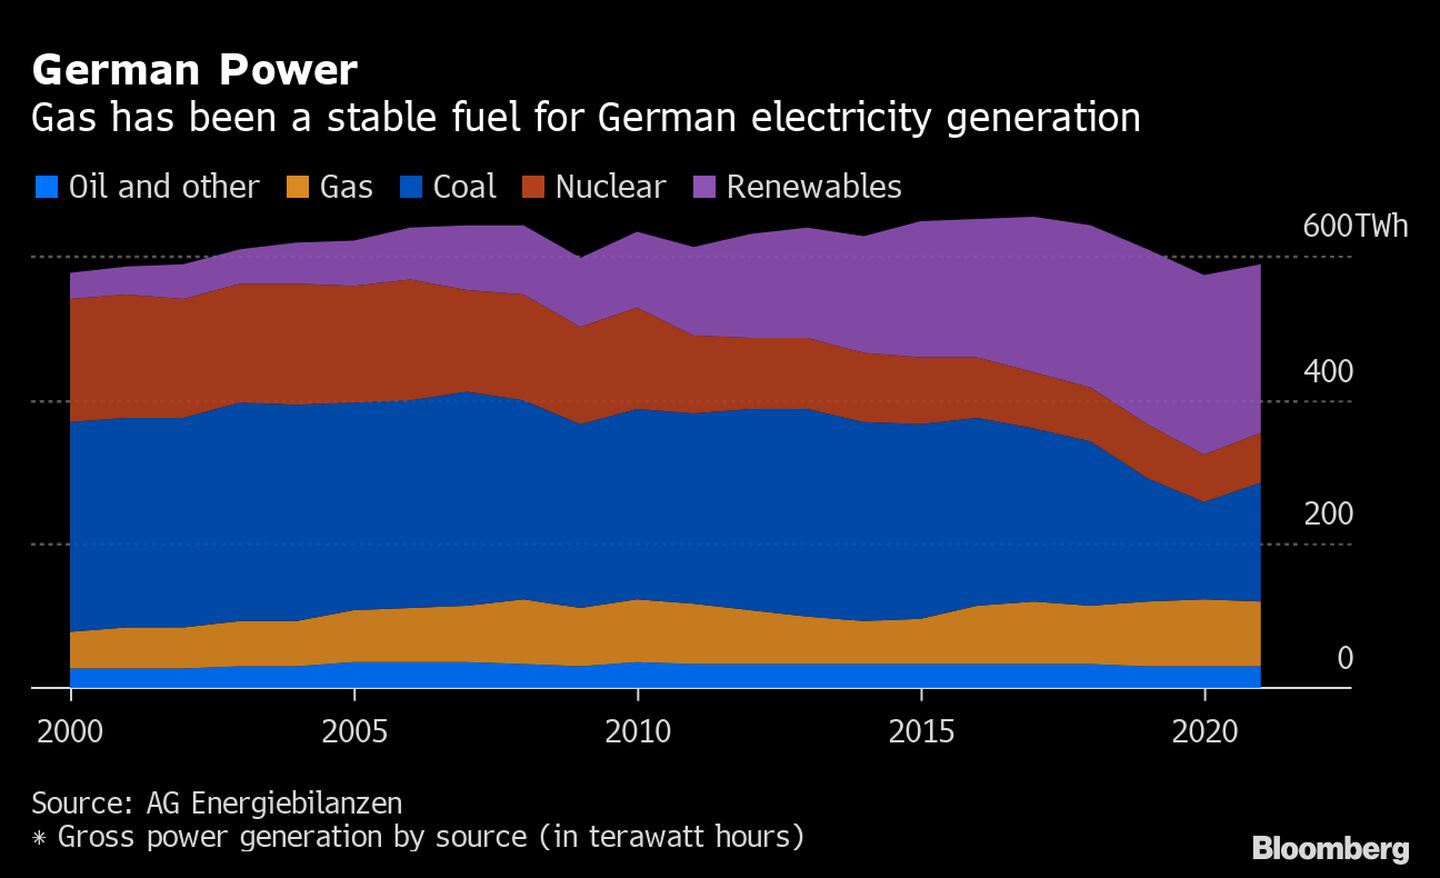 El gas ha sido un combustible estable para la generación de electricidad alemana. dfd